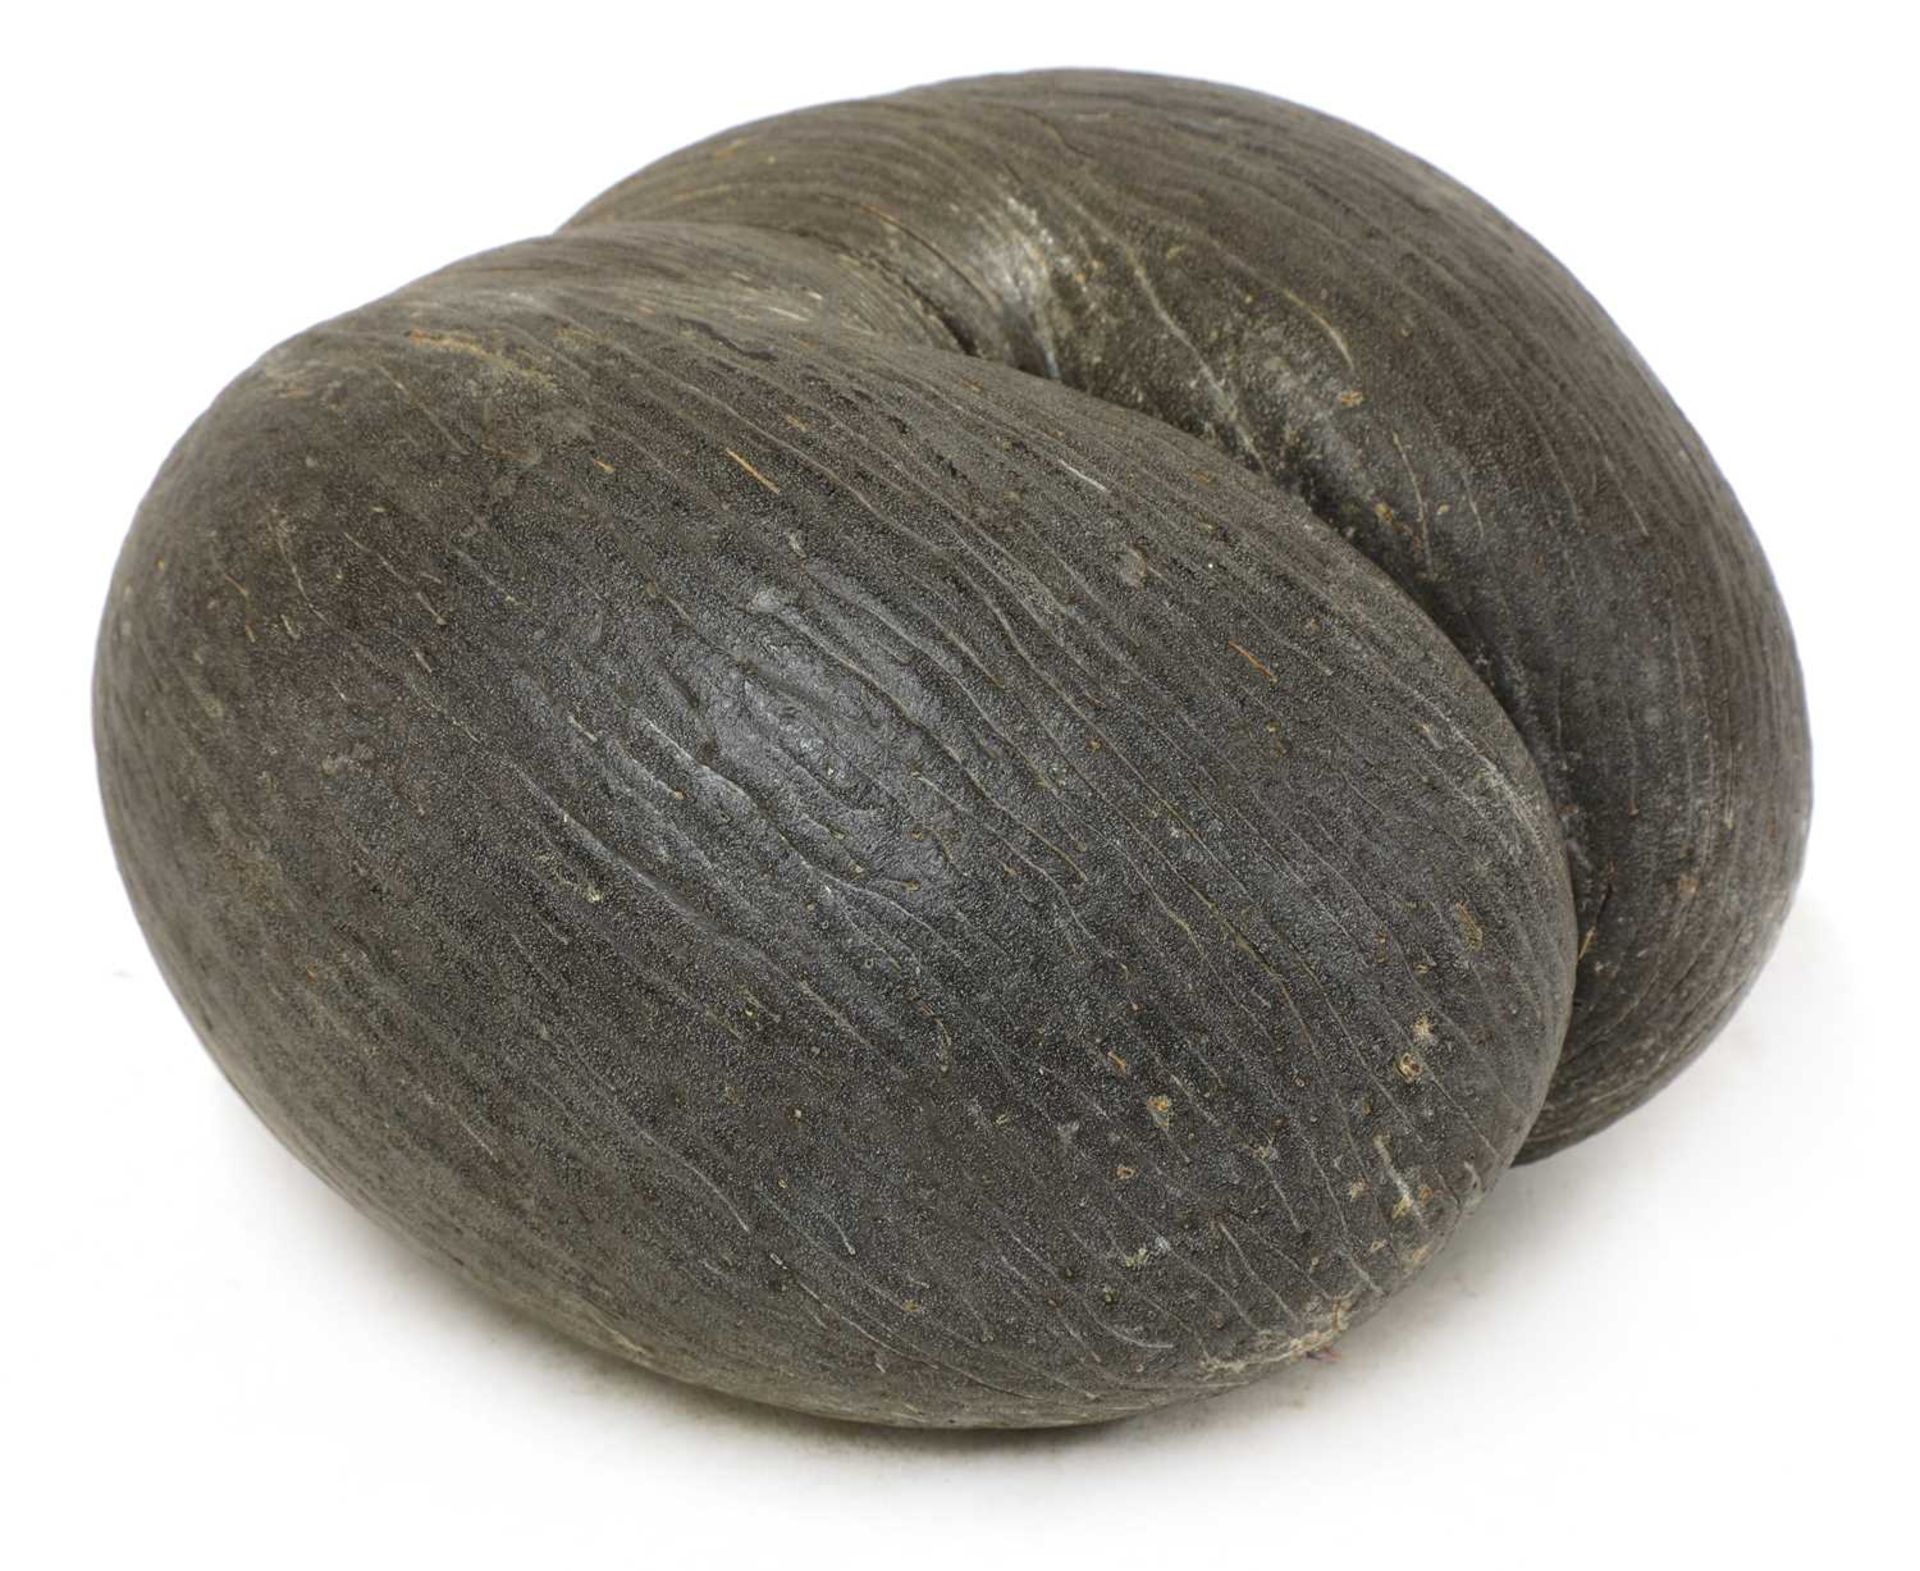 A sea coconut or coco de mer,